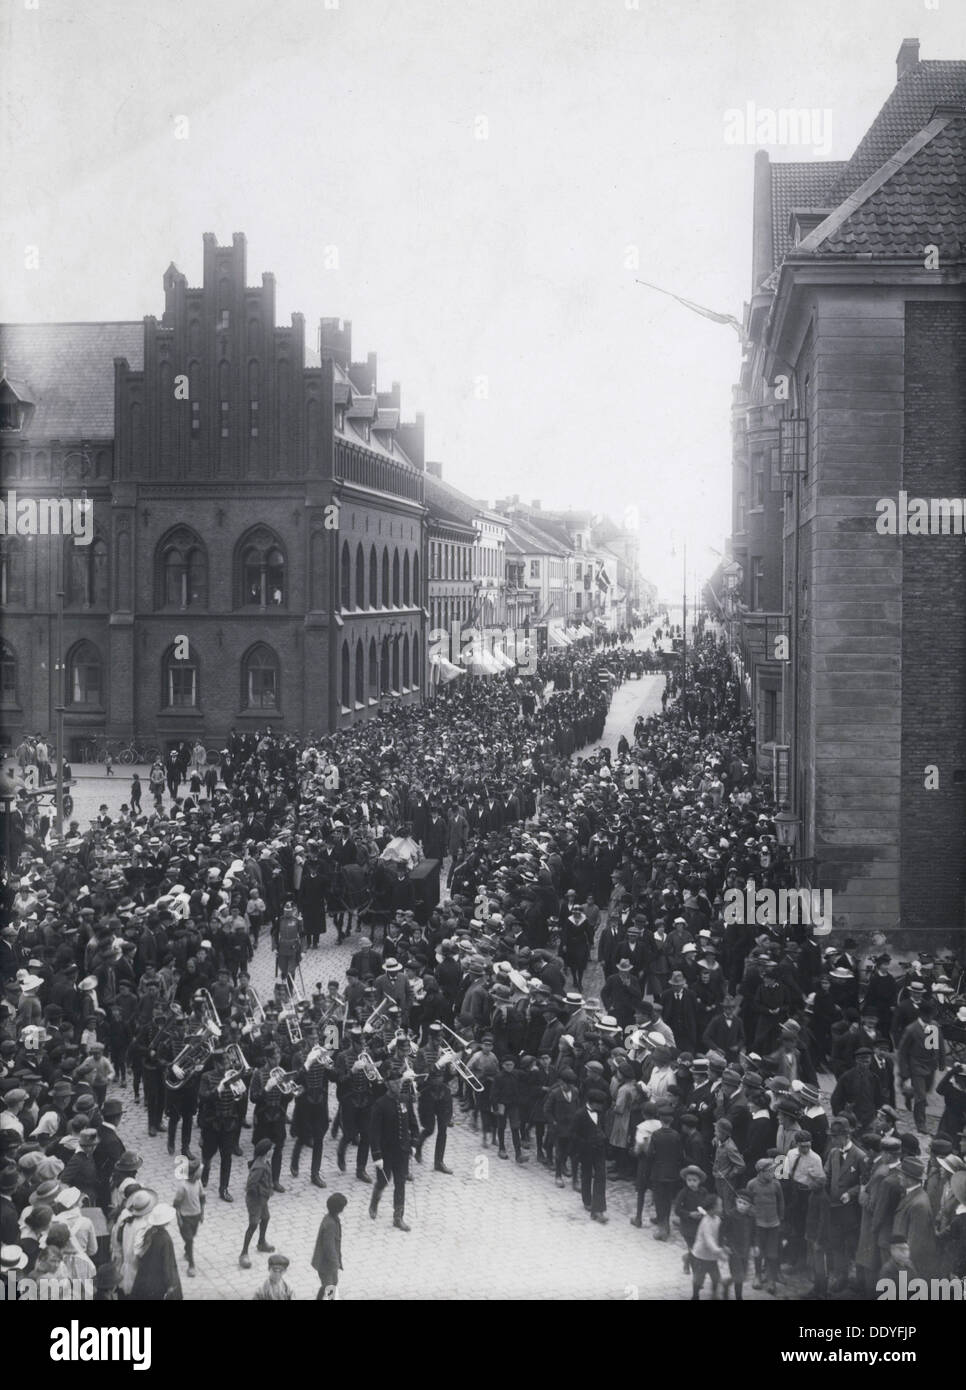 Pionnier de l'aviation suédoise Thulin Enoch's Funeral procession, Landskrona, Suède, 1919. Artiste : Inconnu Banque D'Images